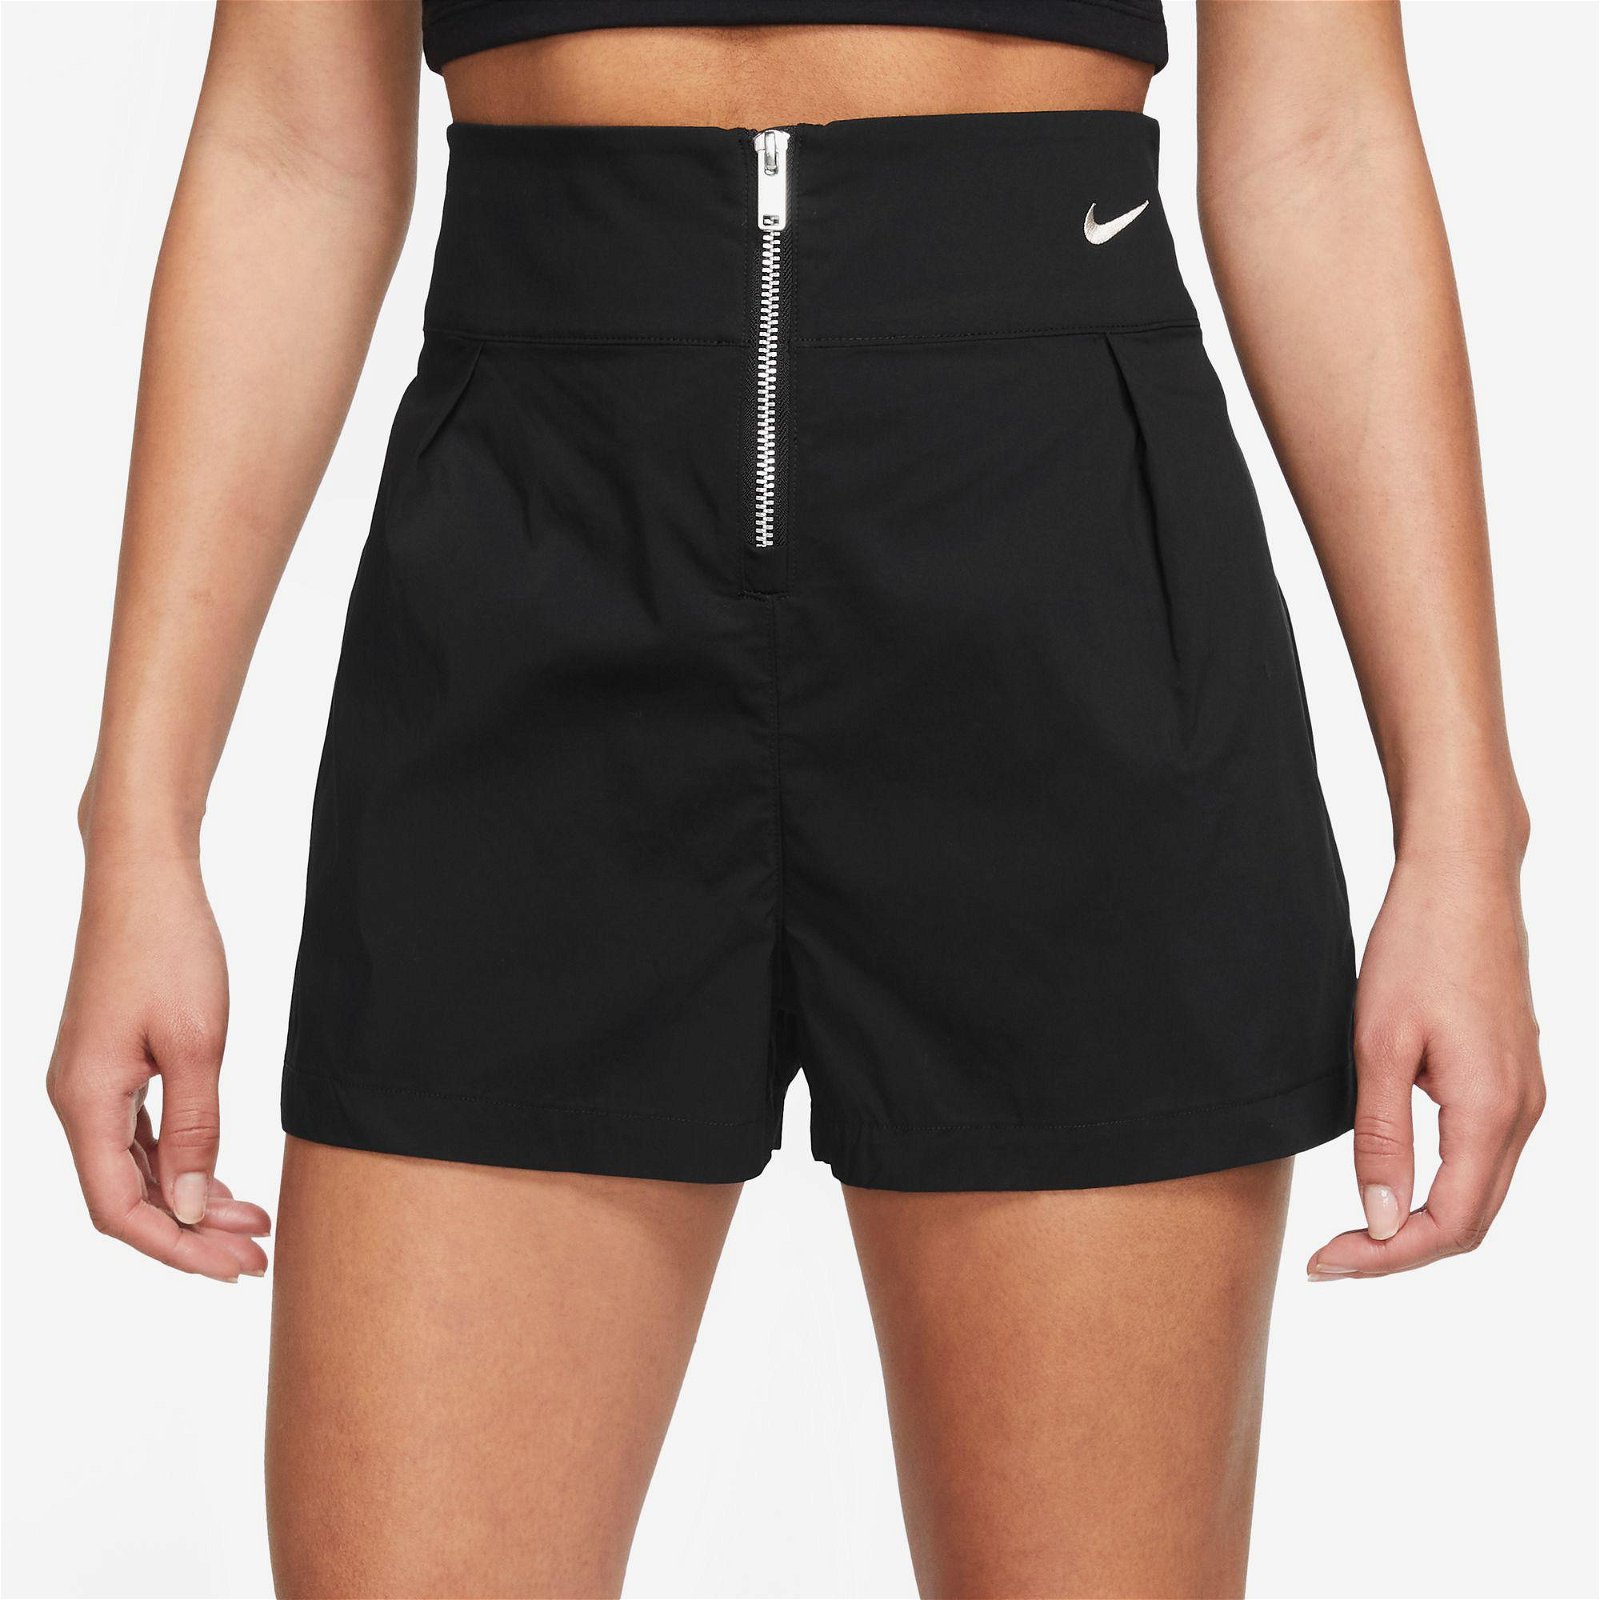 Nike Sportswear Collection Trouser Kadın Siyah Şort